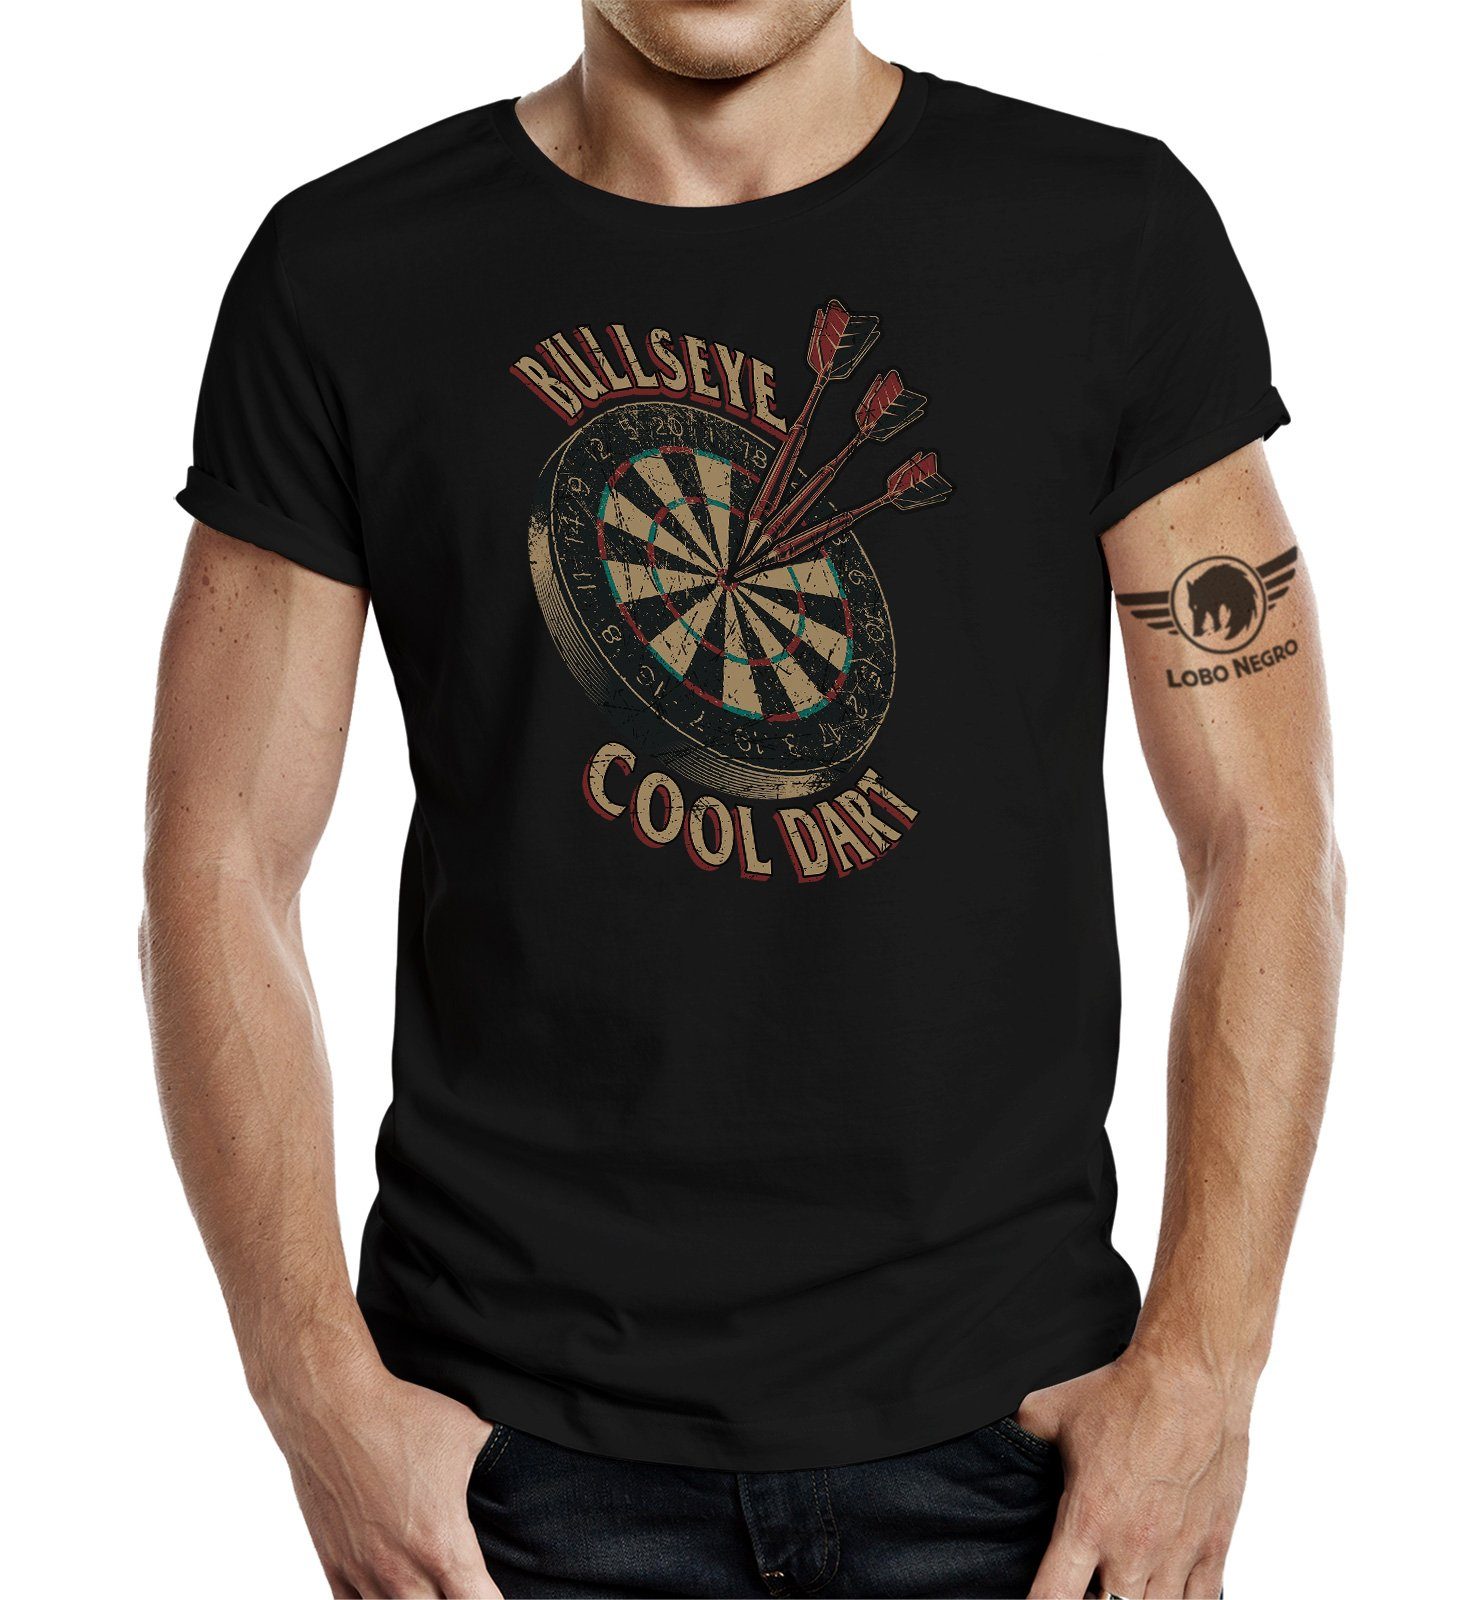 LOBO NEGRO® im T-Shirt Dart Cool für Dart Bulls-Eye Fan: Design den Original